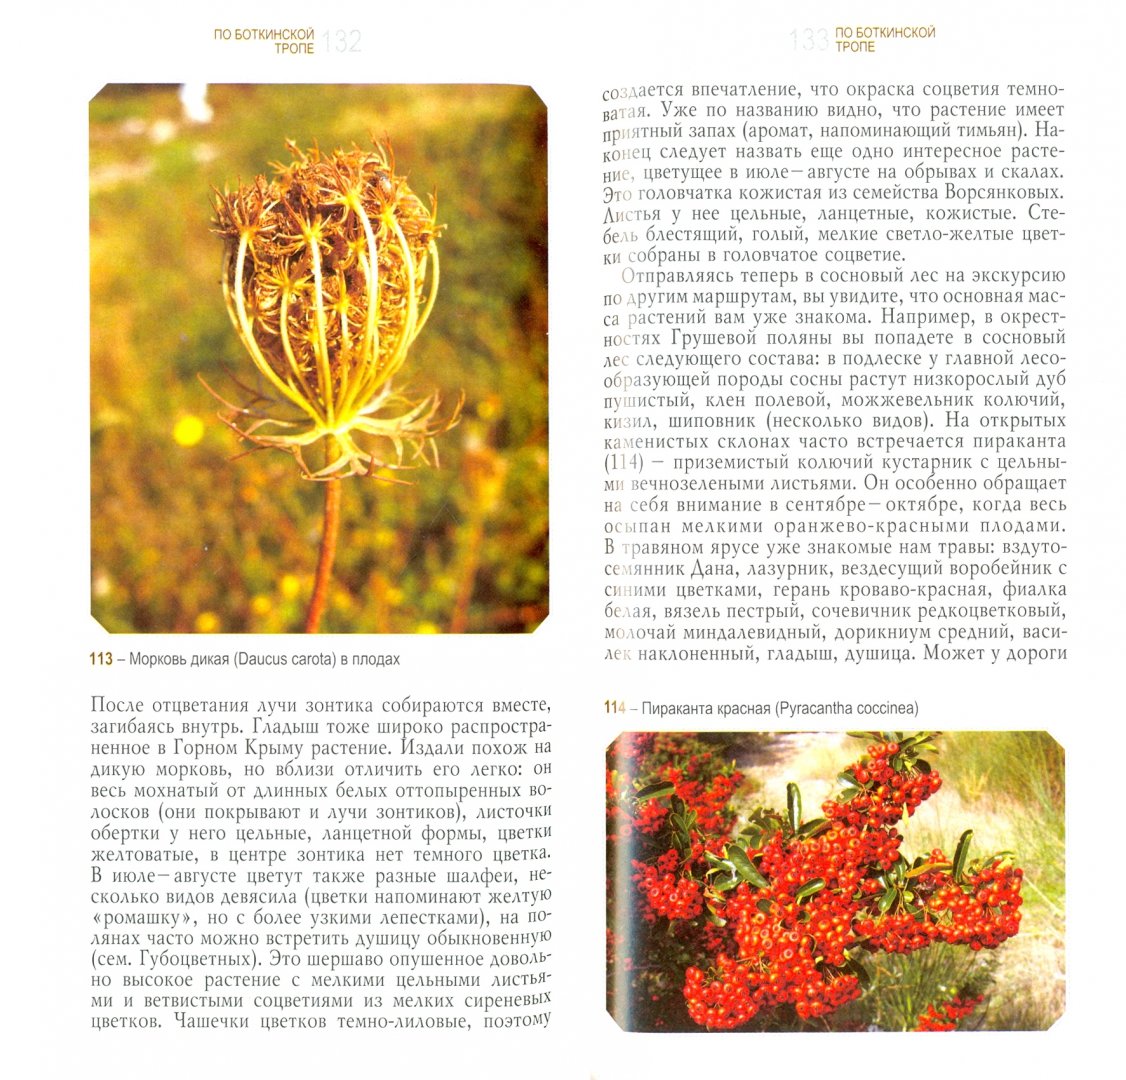 Иллюстрация 1 из 17 для Ботанические экскурсии по Горному Крыму - Крюкова, Исиков | Лабиринт - книги. Источник: Лабиринт